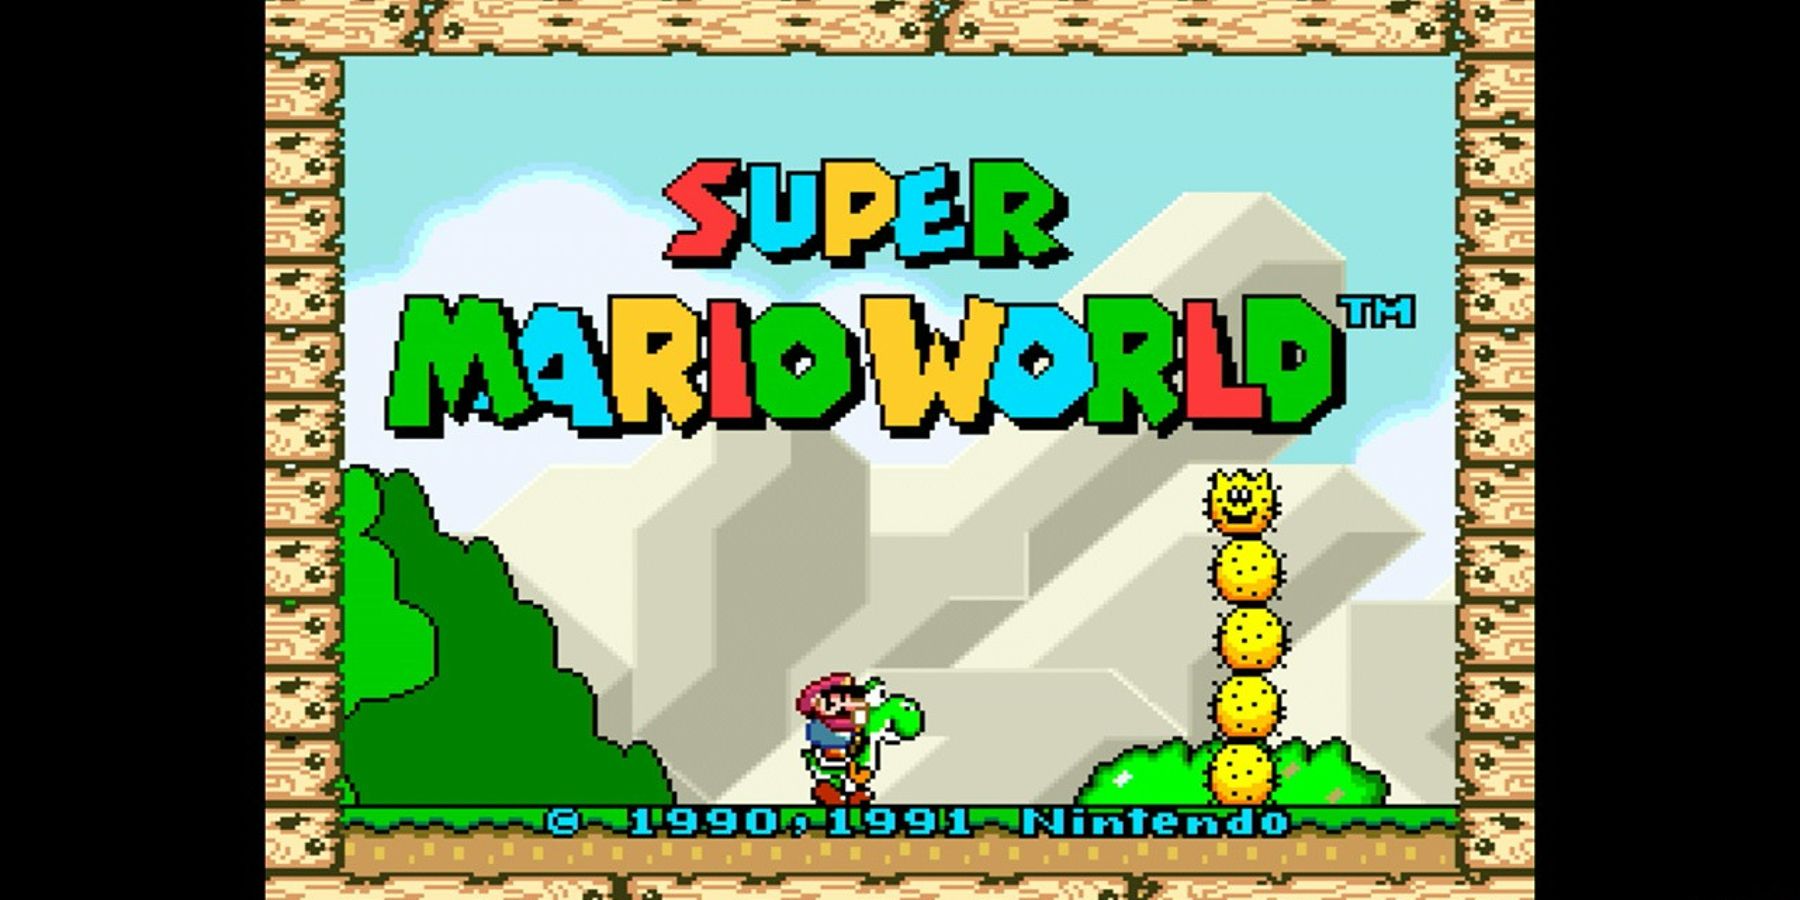 Super Mario World title screen